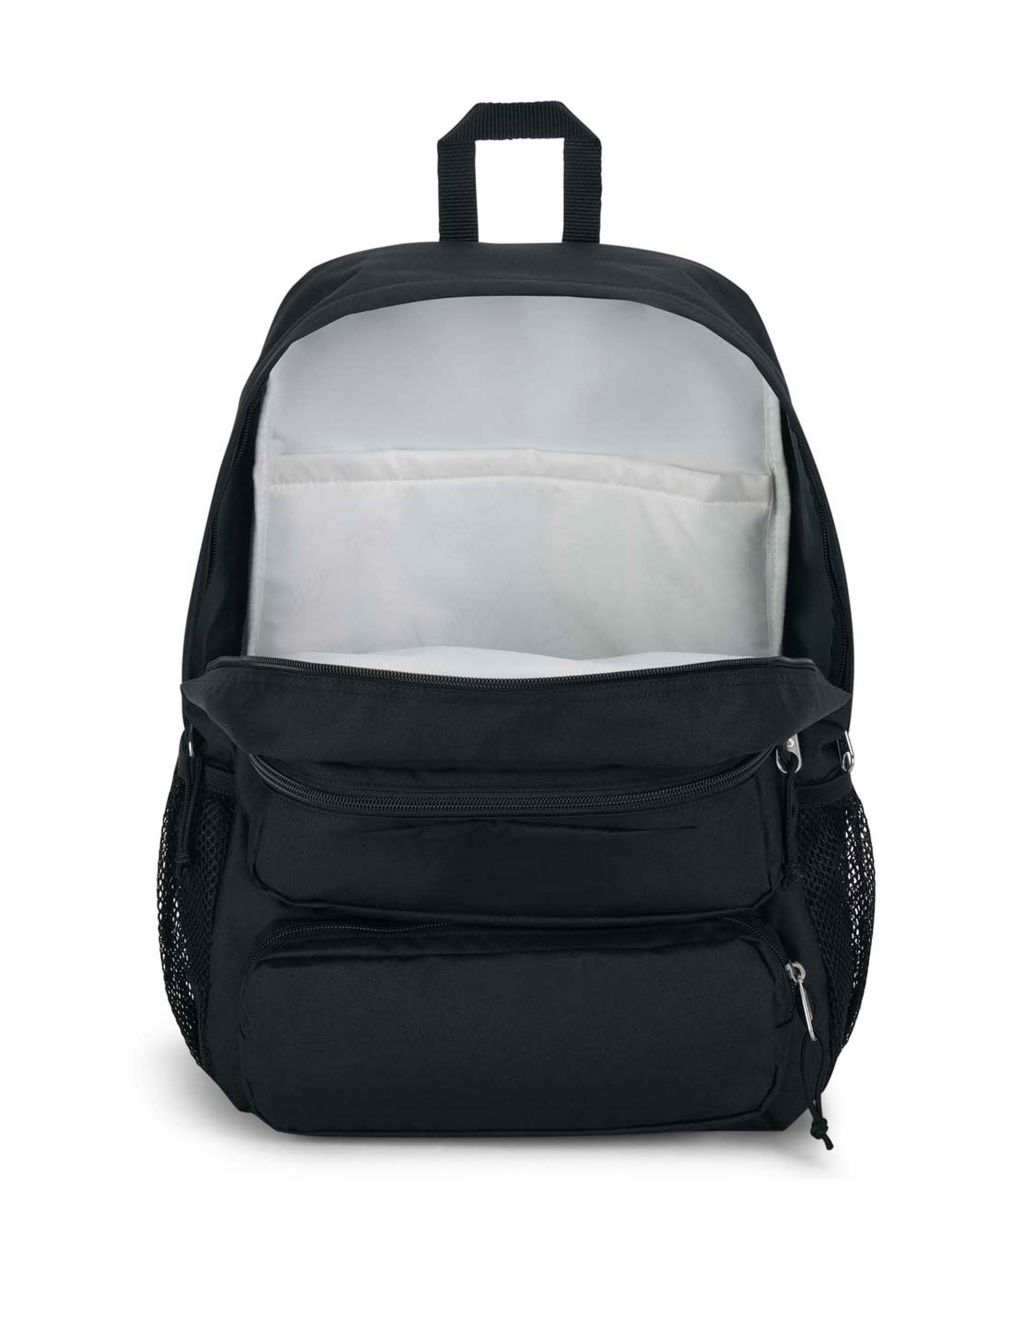 Doubleton Multi Pocket Backpack | Jansport | M&S